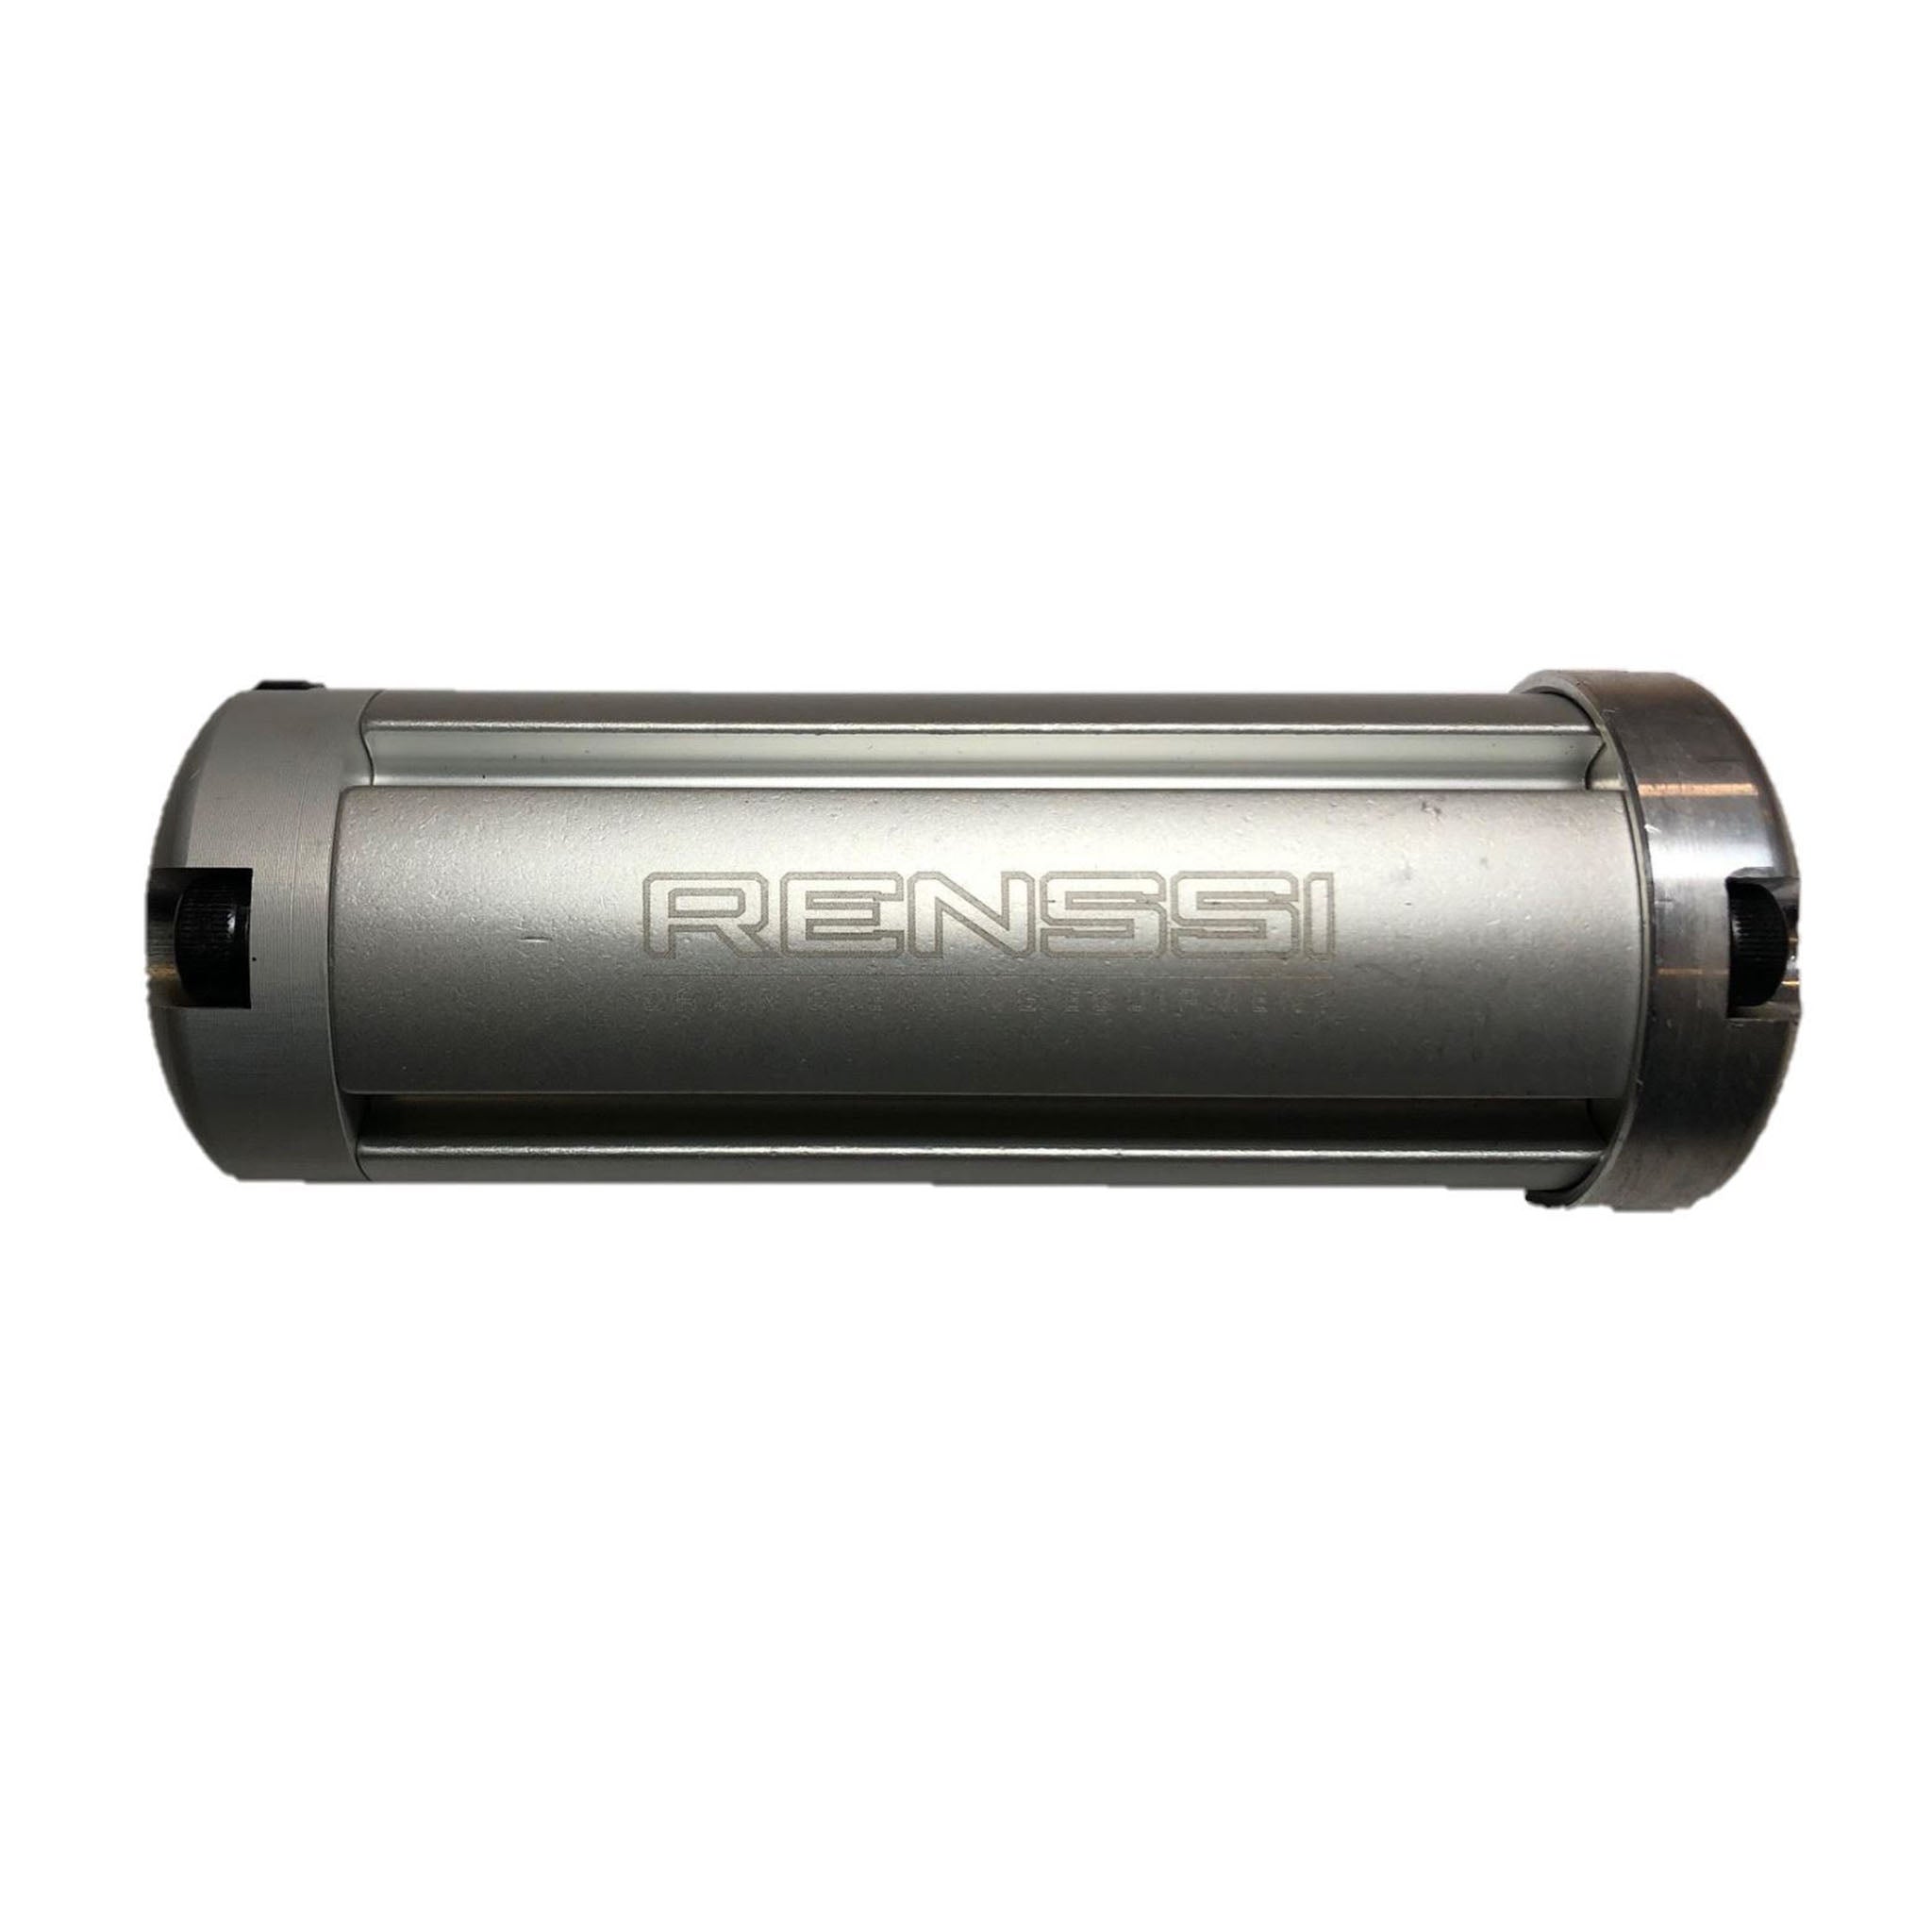 Renssi Sandpaper Holder 100mm wide, Ø 10mm cable